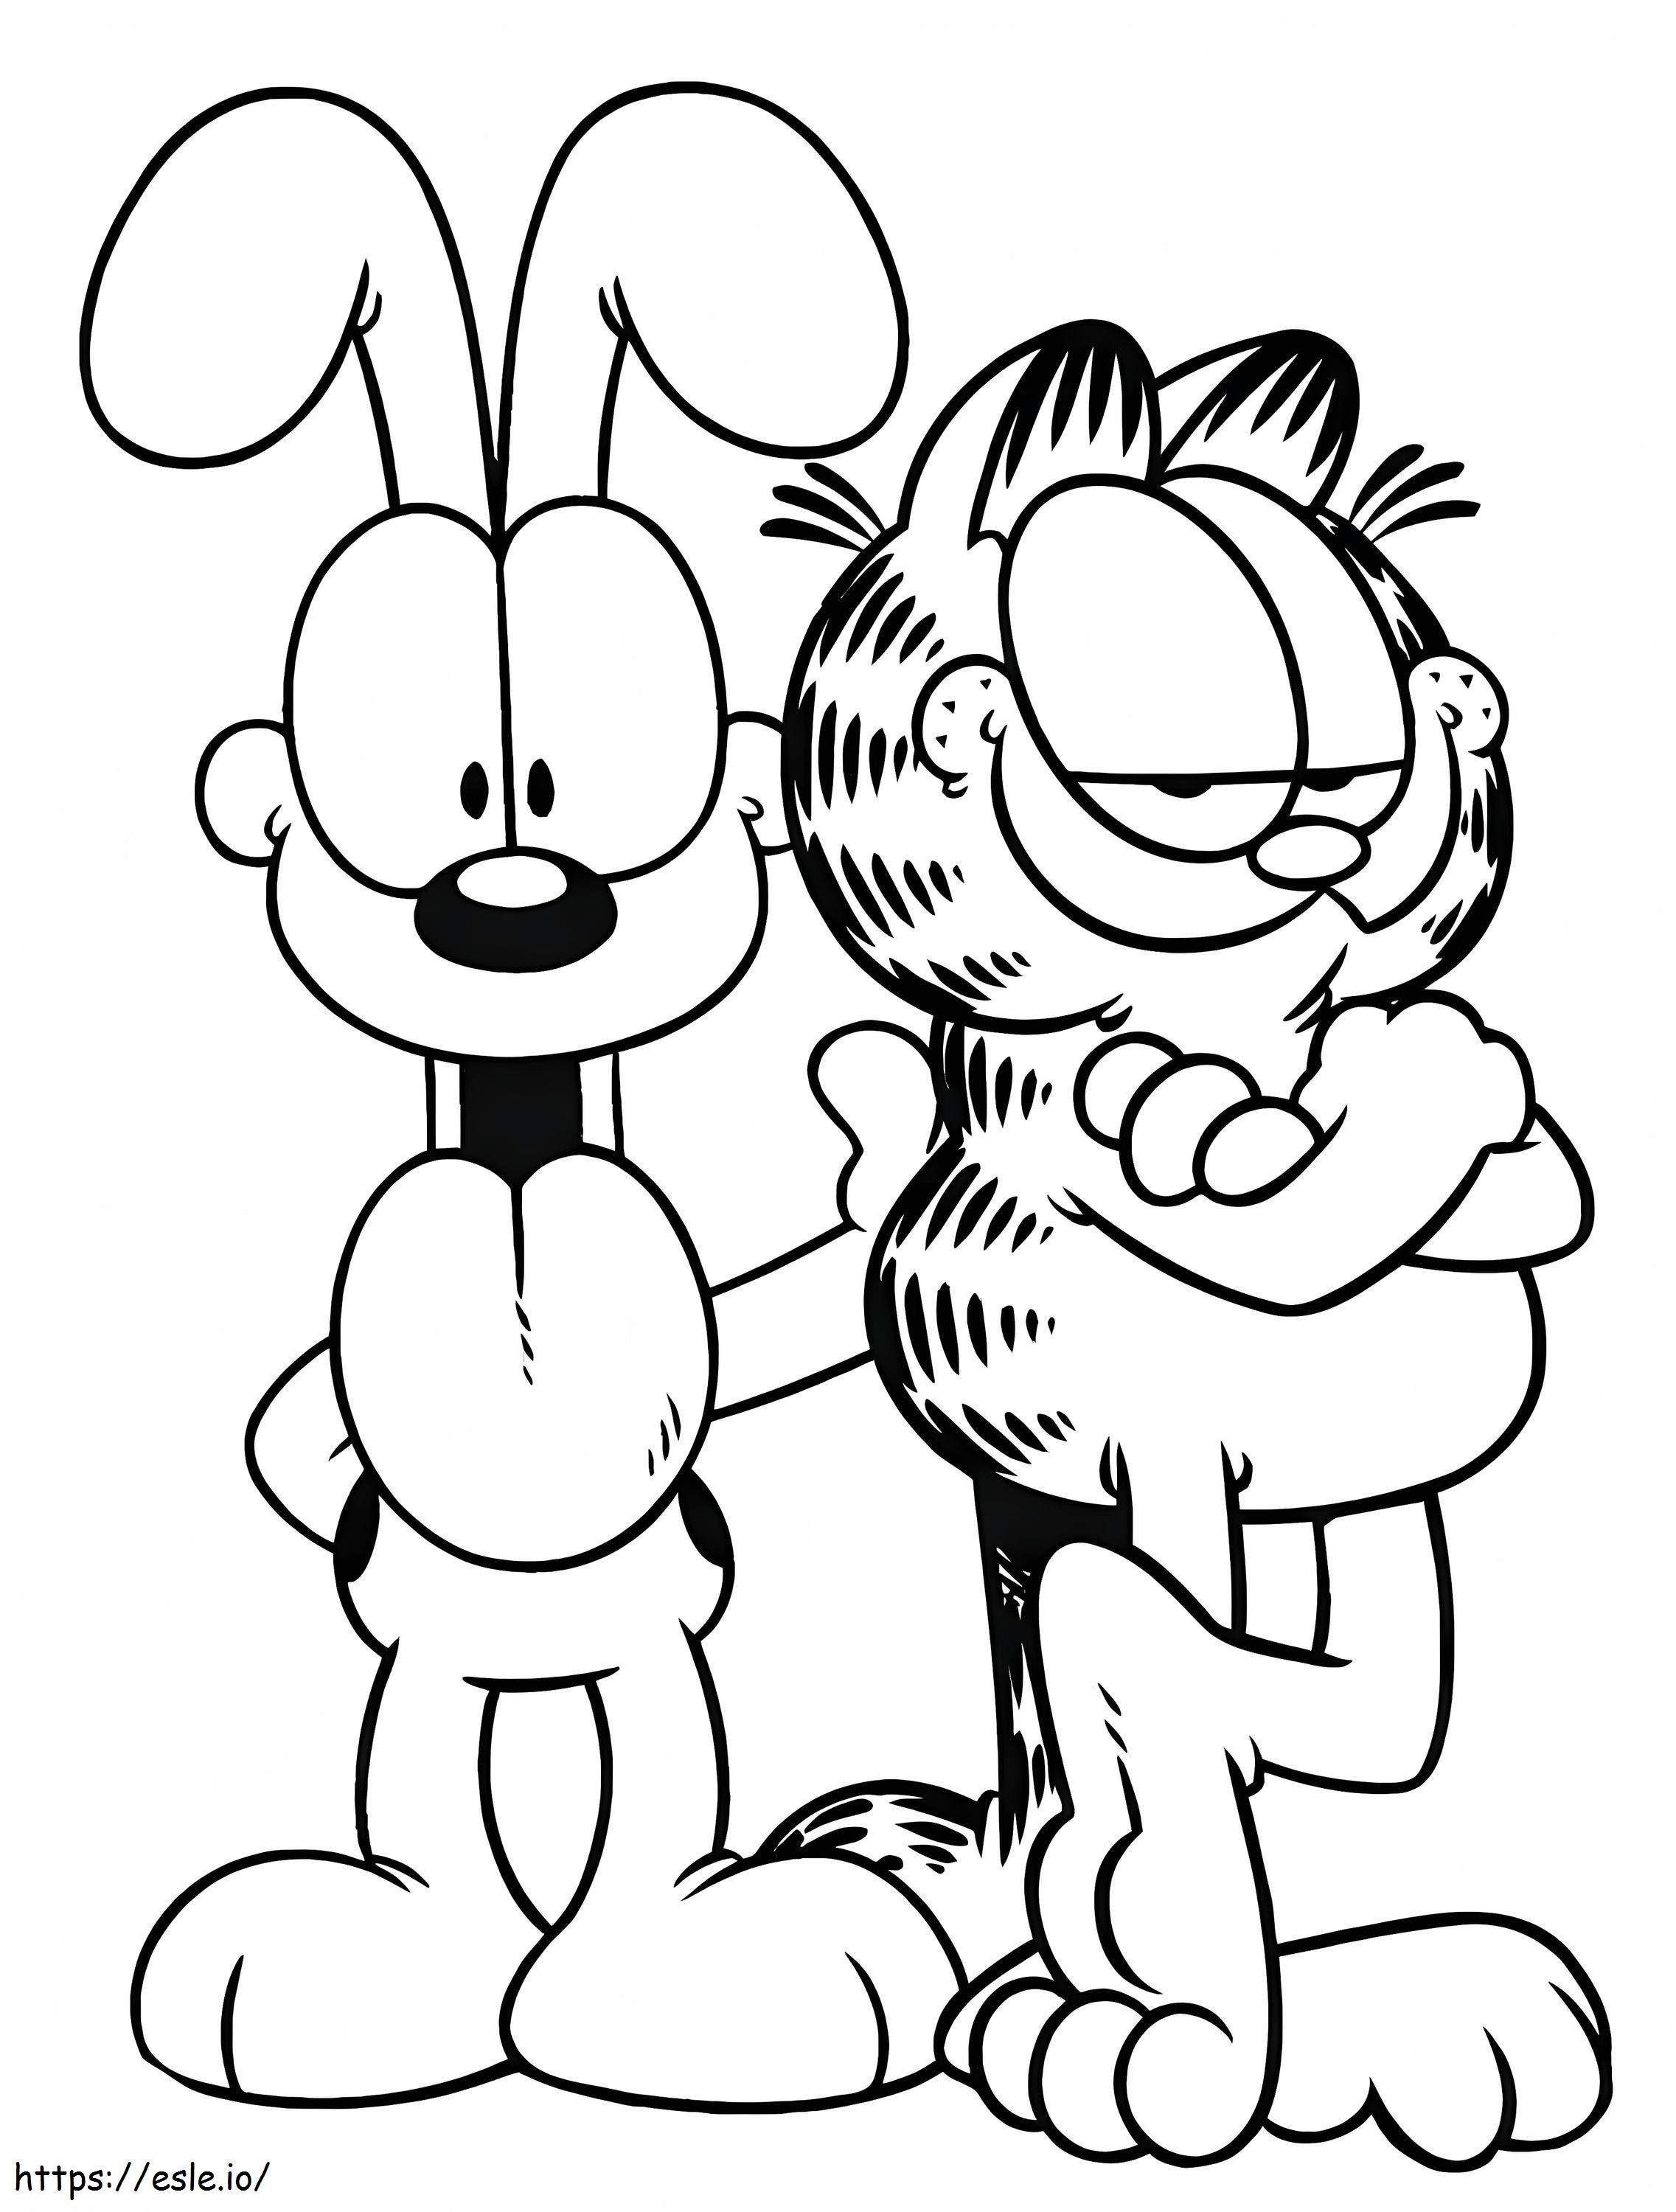 Garfield und Odie ausmalbilder